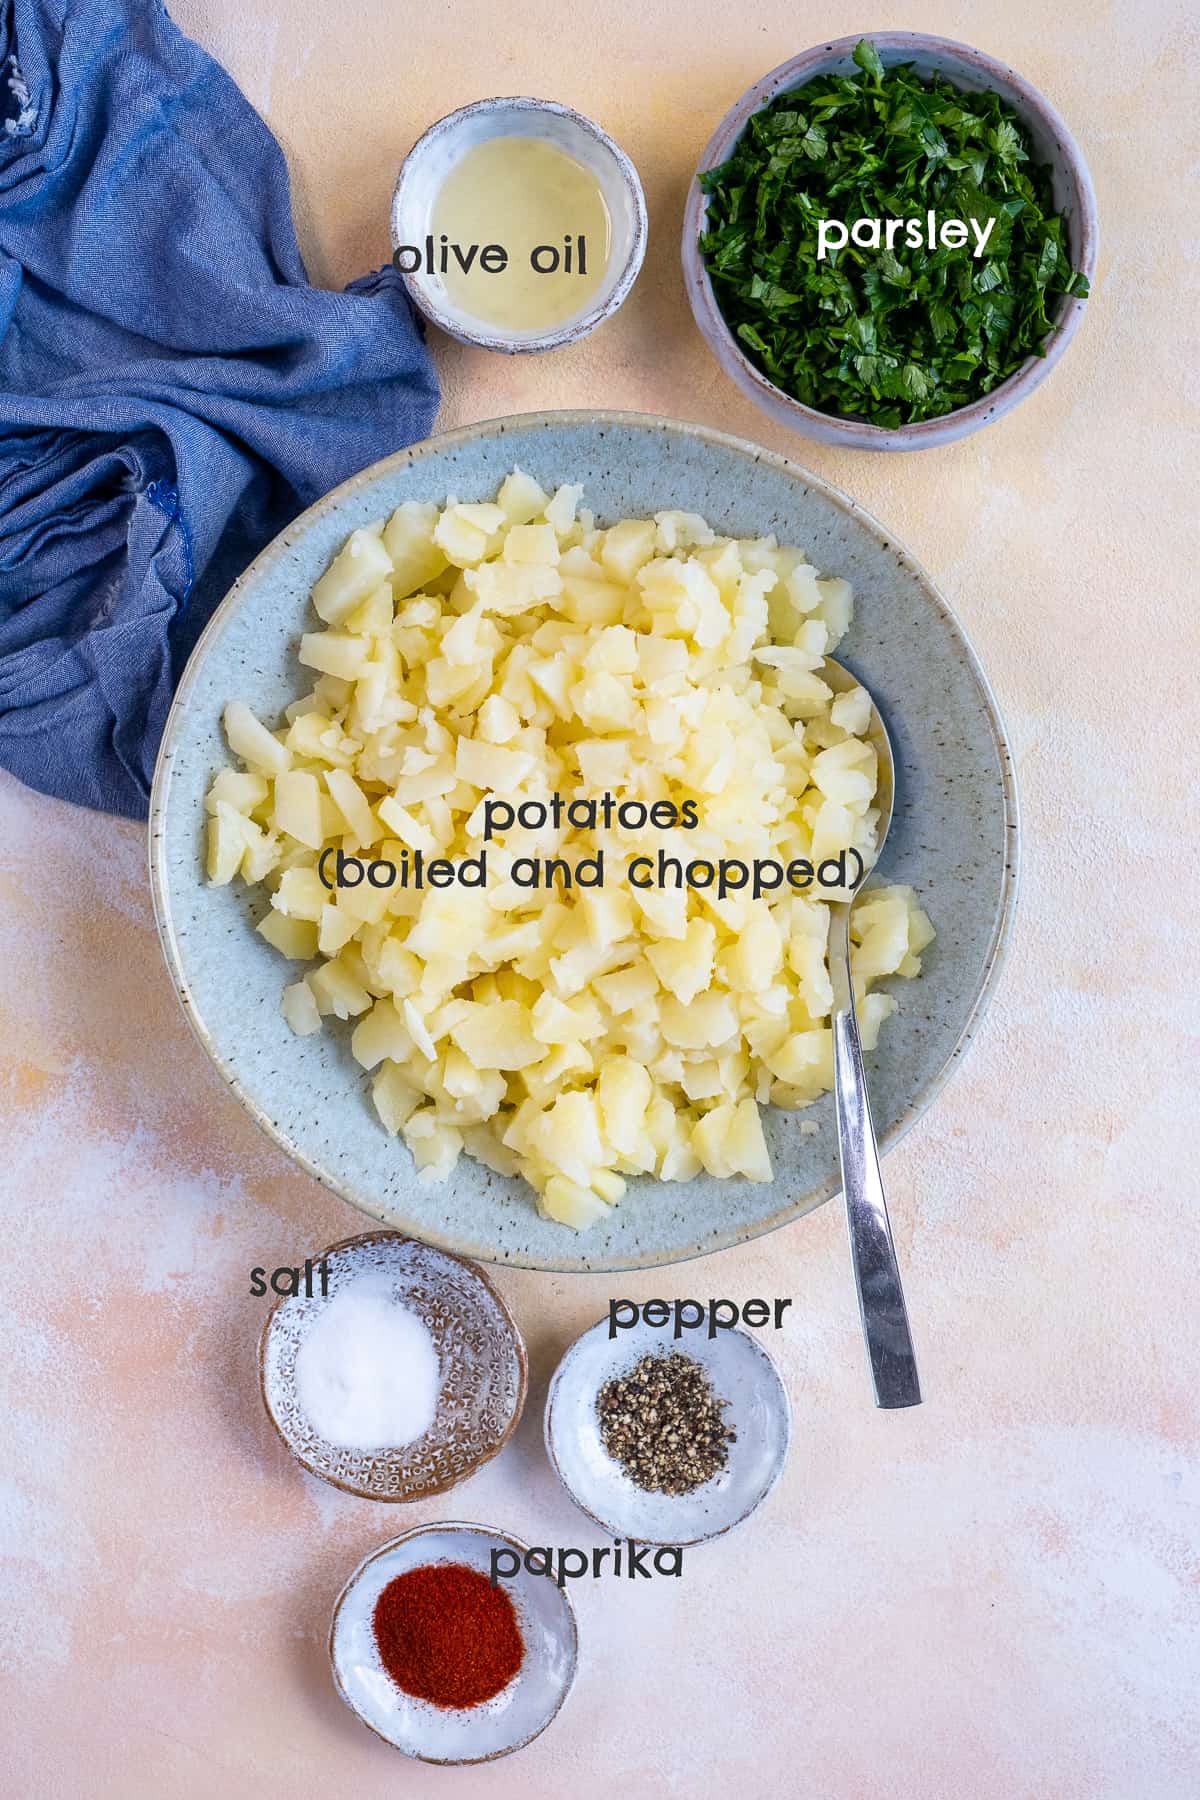 切碎的煮土豆放在碗里，欧芹、橄榄油、盐、胡椒和红辣椒放在不同的碗里，背景要淡。